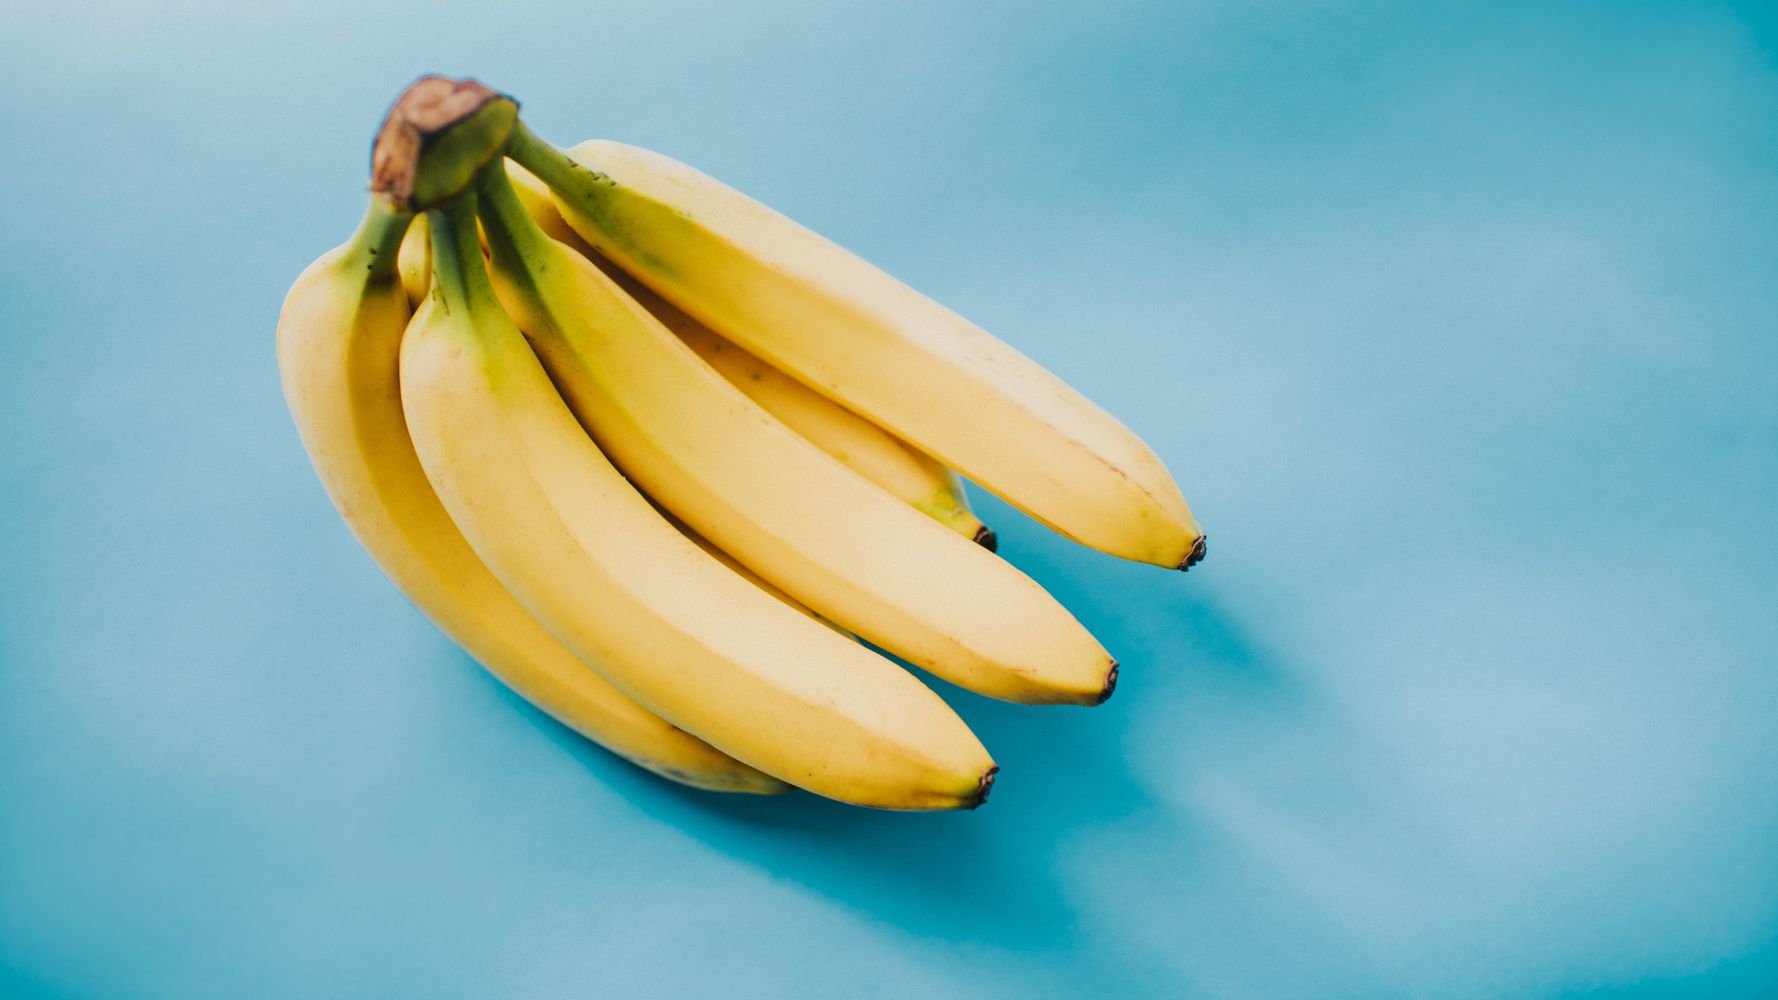 Μπανάνες: Αυτά είναι τα οφέλη για την υγεία – Τι θα συμβεί στον οργανισμό αν τρώτε κάθε μέρα